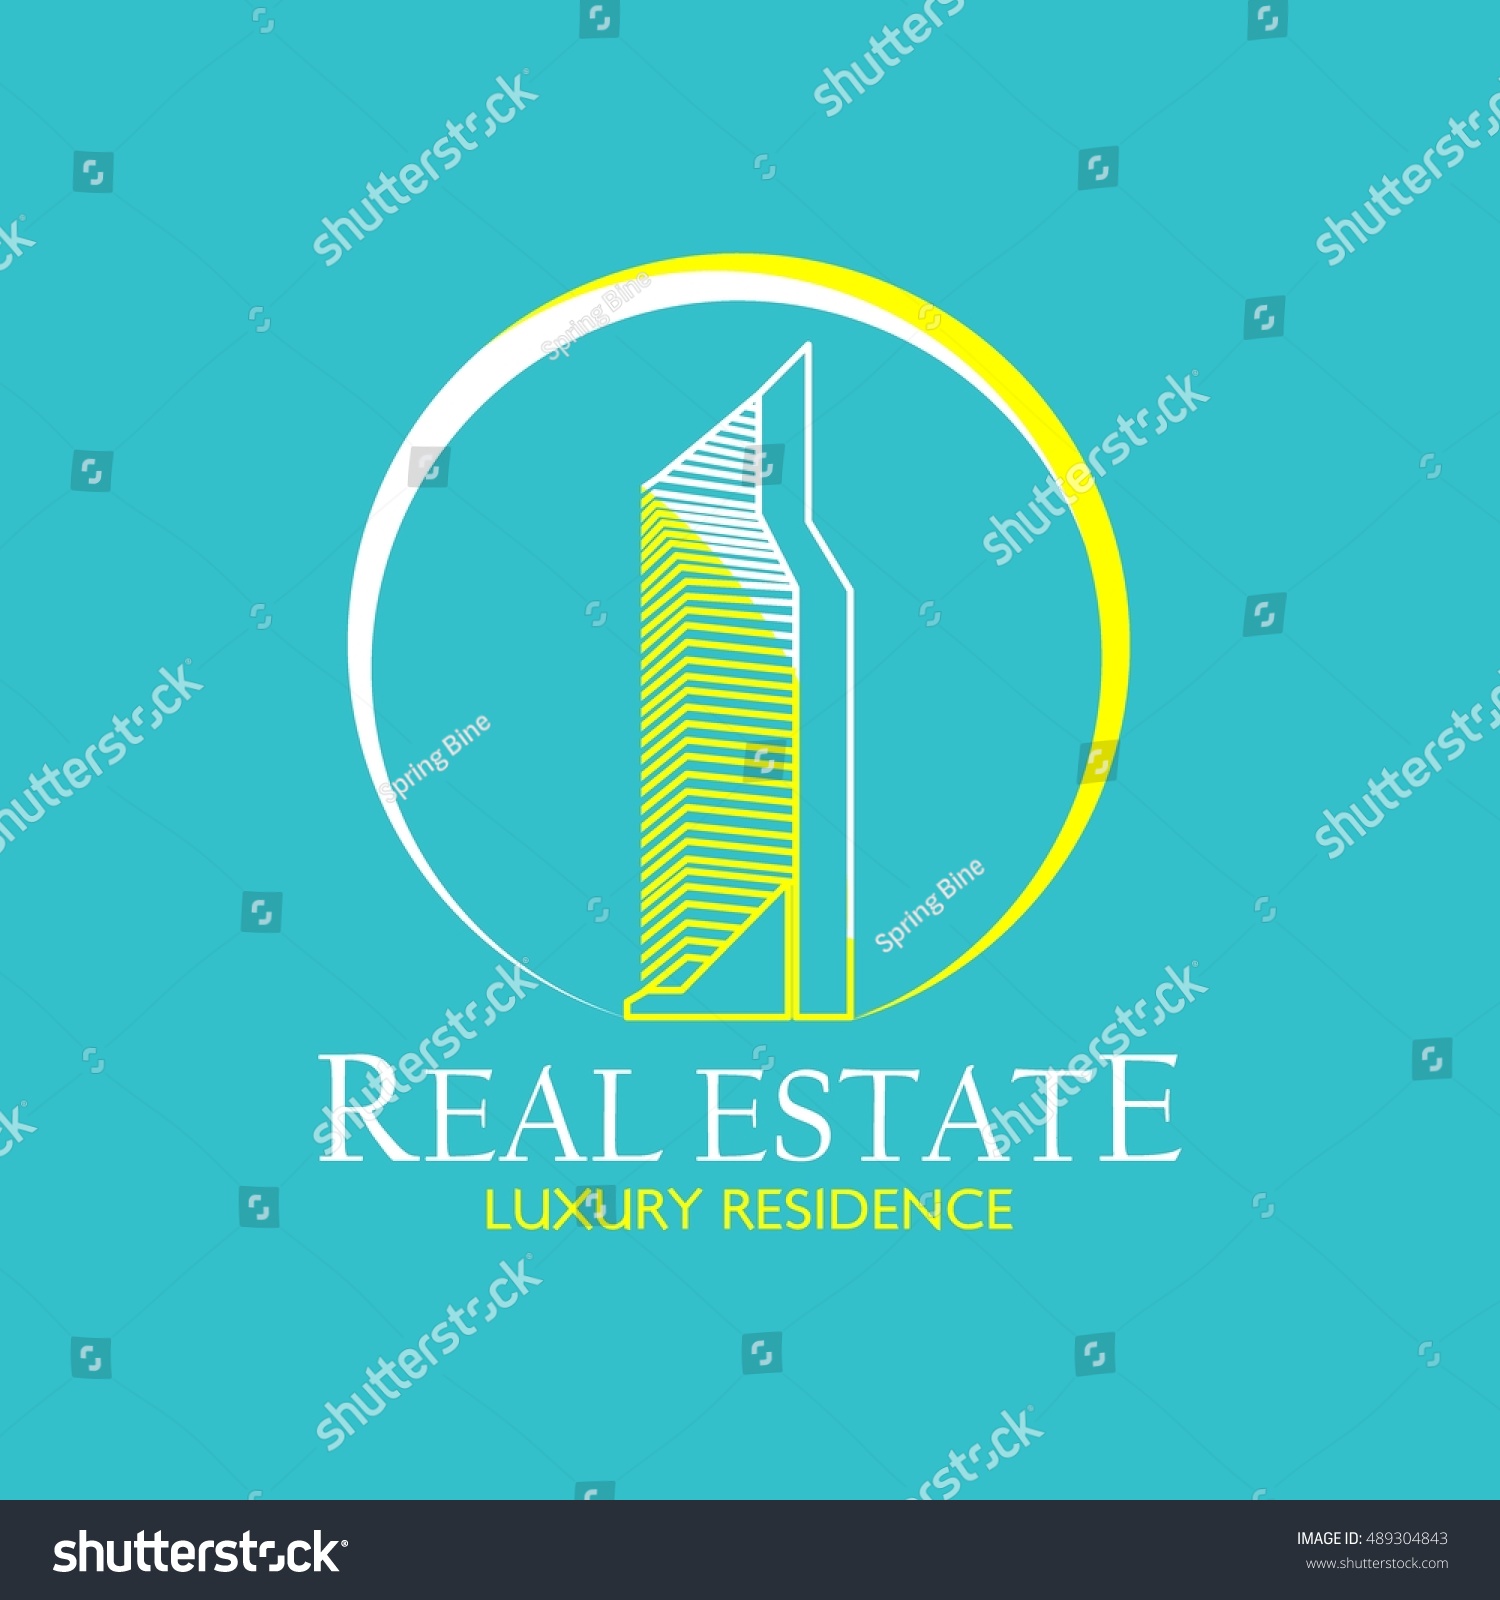 Real Estate Logo Design Template Creative Royalty Free Stock Vector 489304843 0214